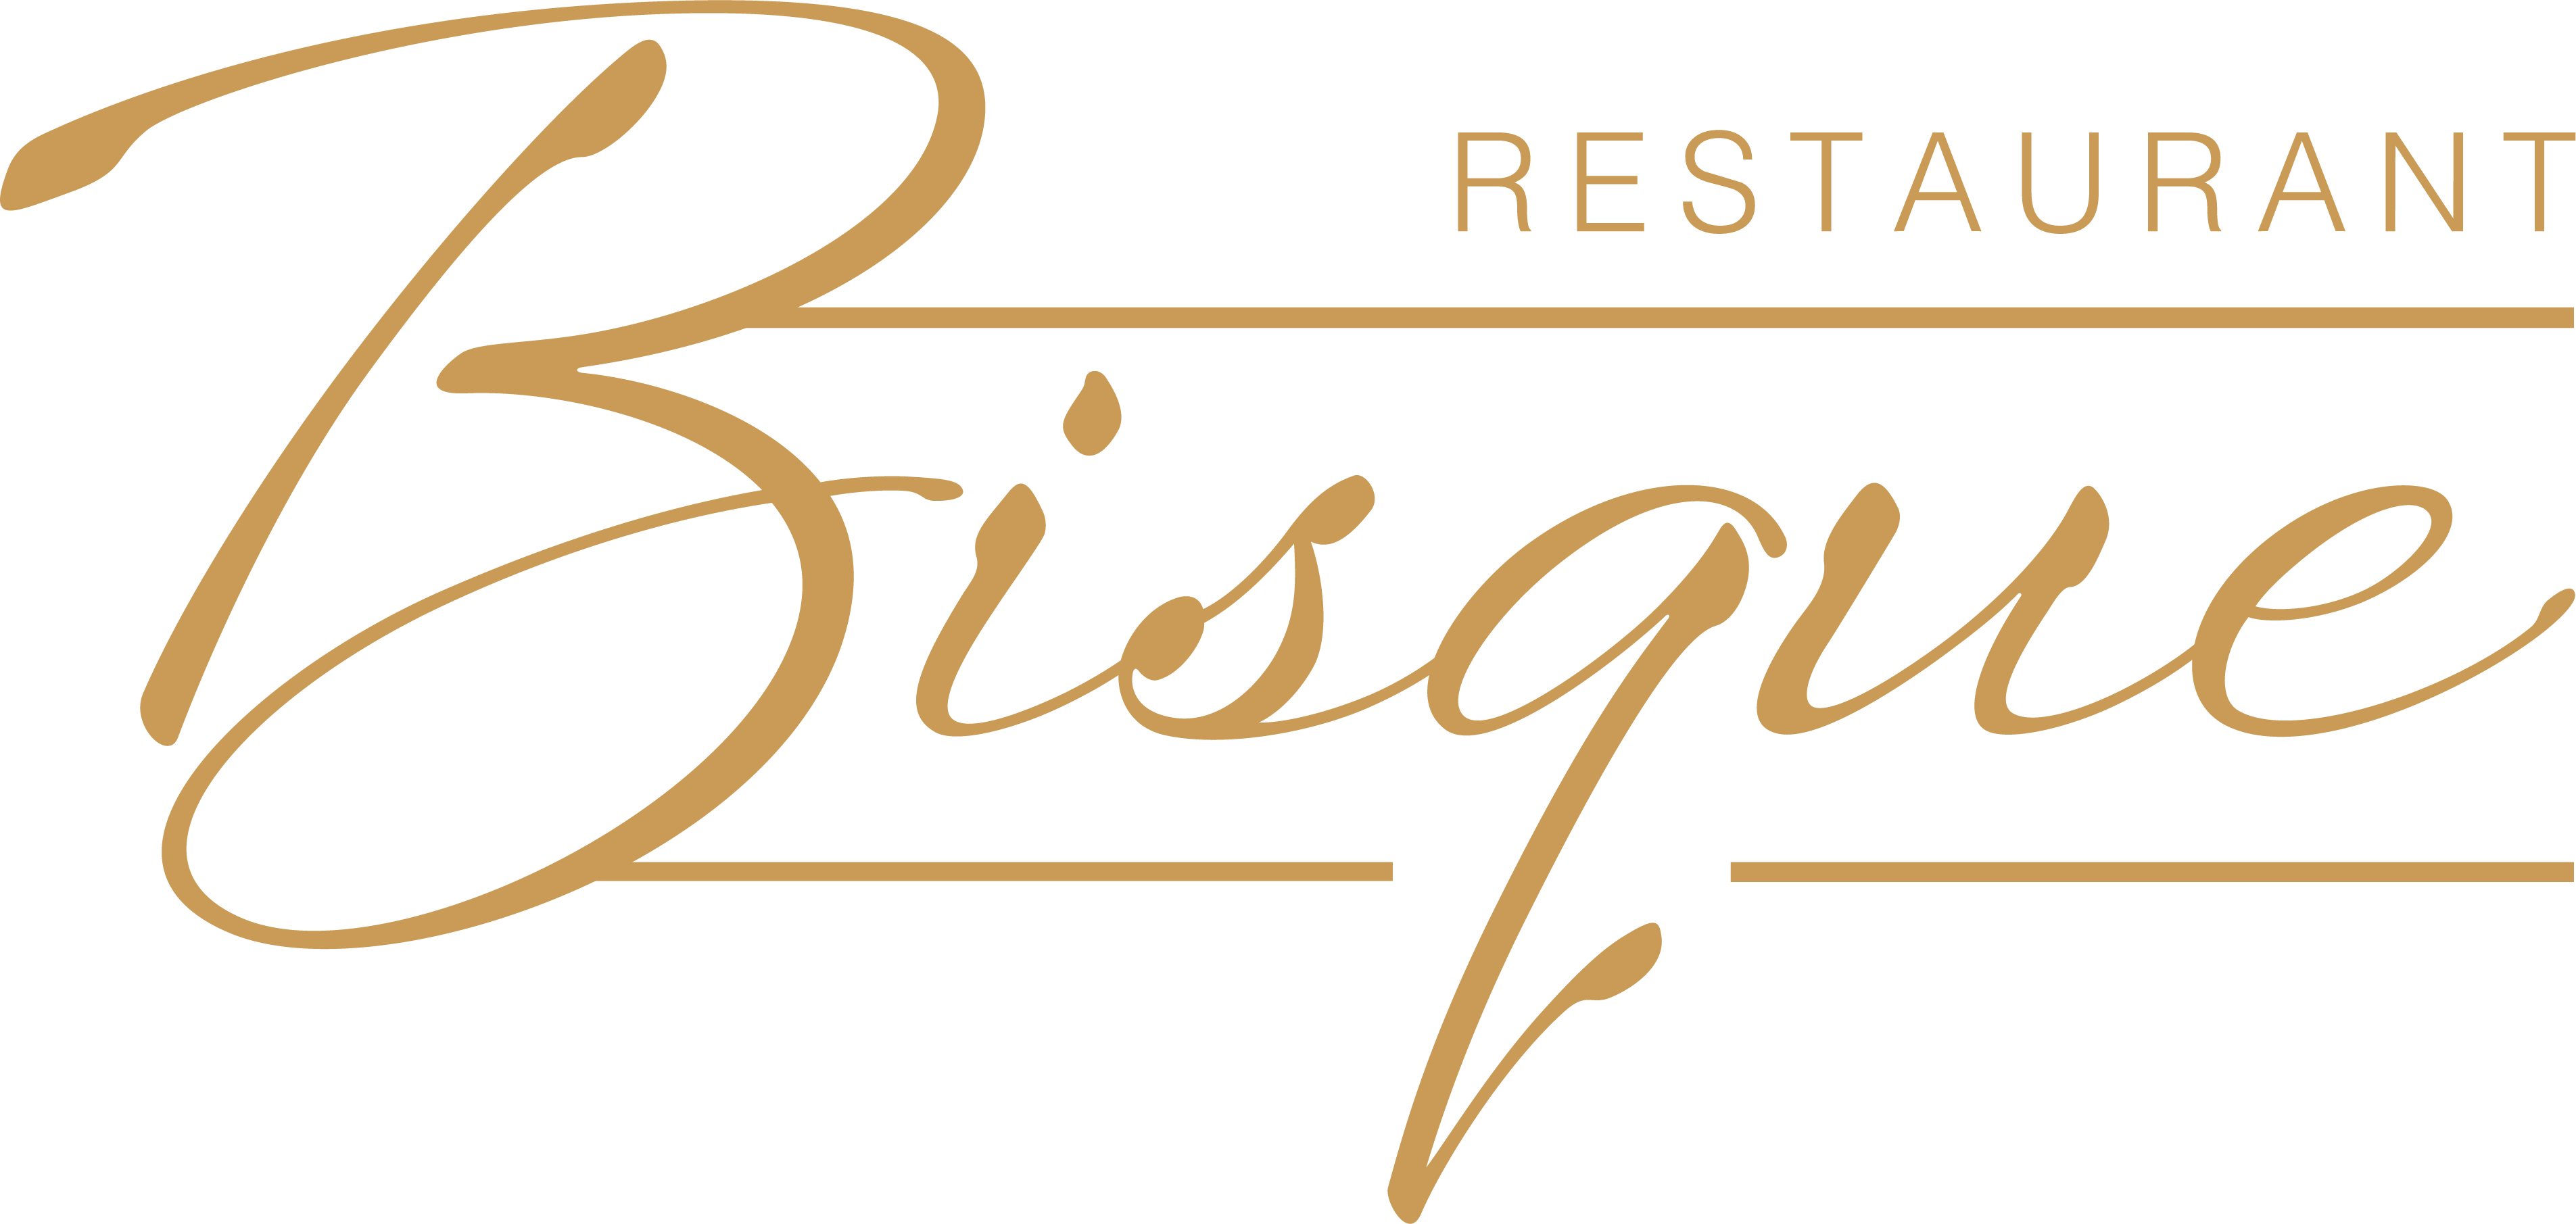 Restaurant Bisque